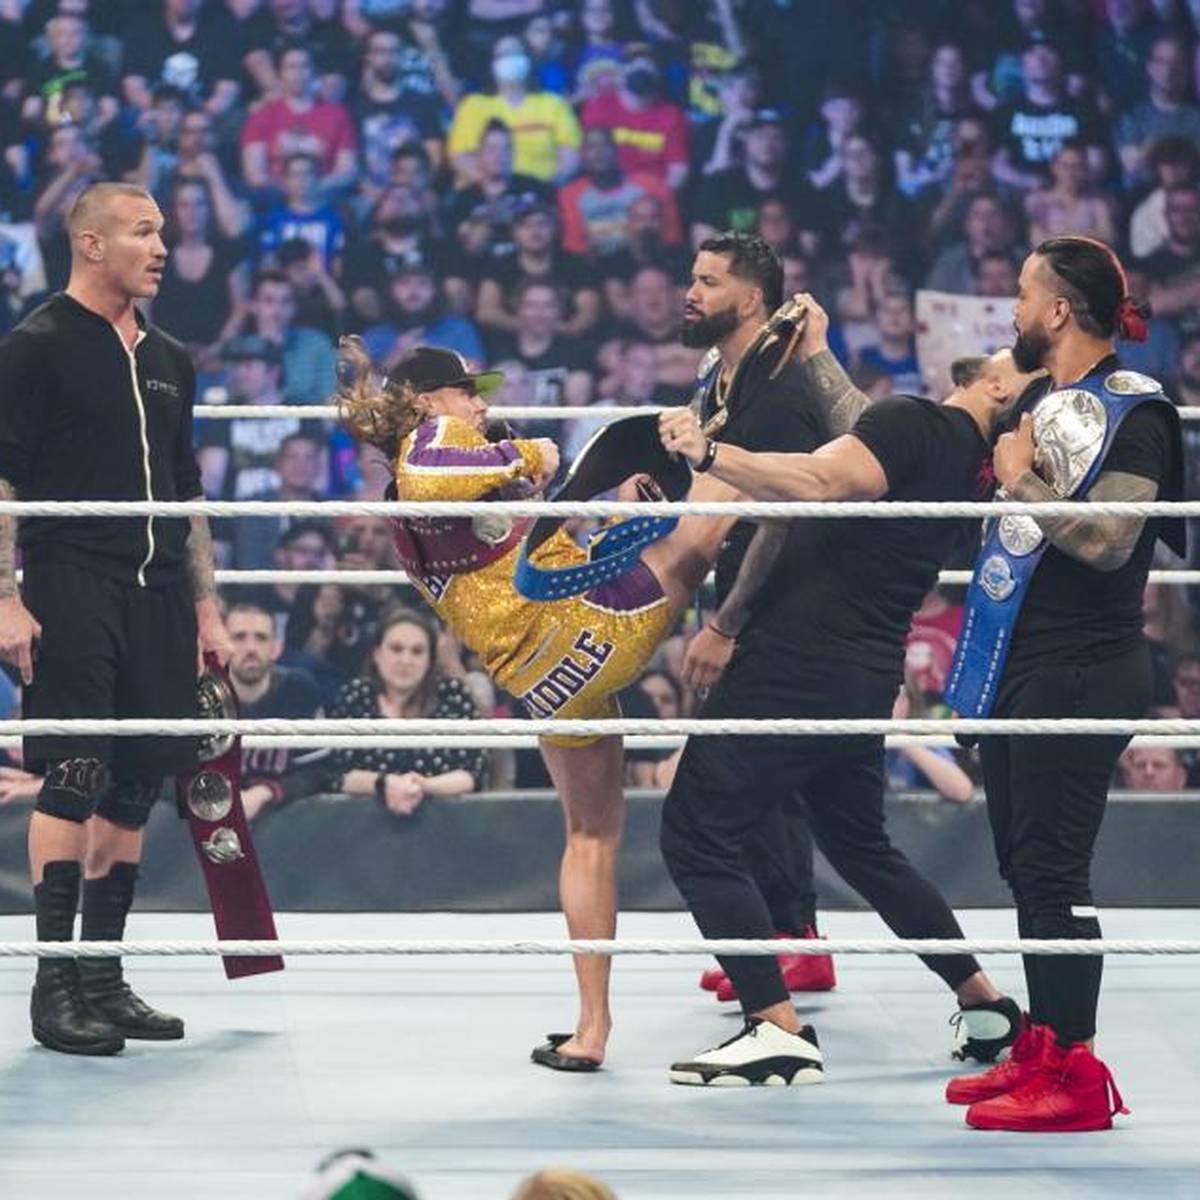 WWE fixiert bei Friday Night SmackDown nun doch einen Vereinigungskampf zwischen den Usos und RK-Bro - der aber wohl wieder nicht das ist, was er zu sein scheint.